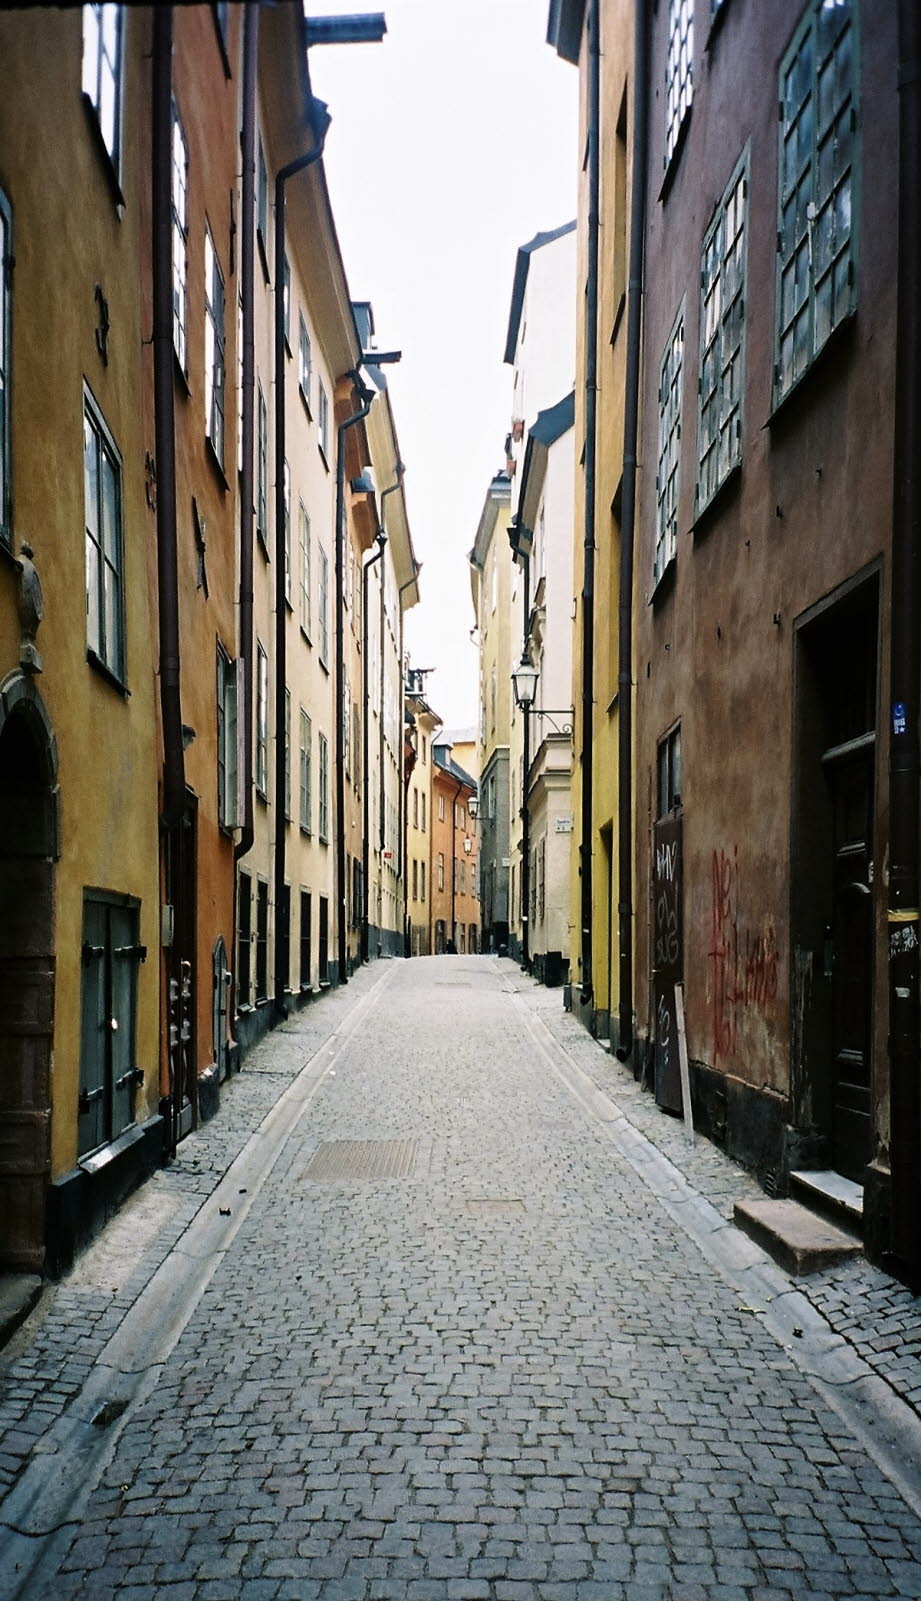 Gamla Stan, die Altstadt, ist einer der größten und am besten erhaltenen mittelalterlichen Stadtkerne Europas und eine der wichtigsten Sehenswürdigkeiten Stockholms. Hier wurde Stockholm 1252 gegründet. Ganz Gamla Stan und die angrenzende Insel Riddarholm